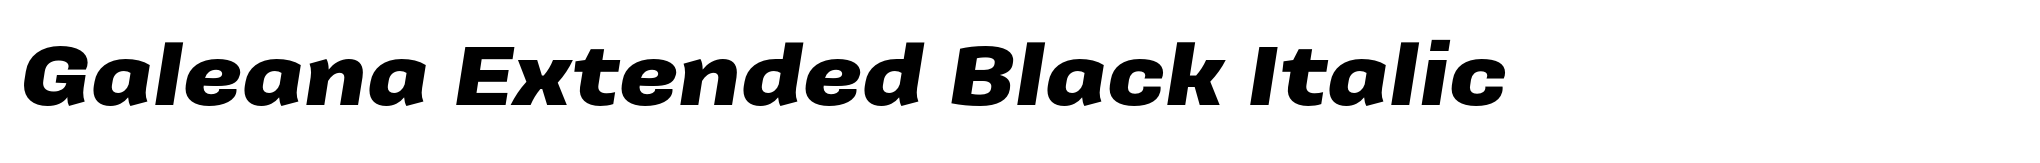 Galeana Extended Black Italic image